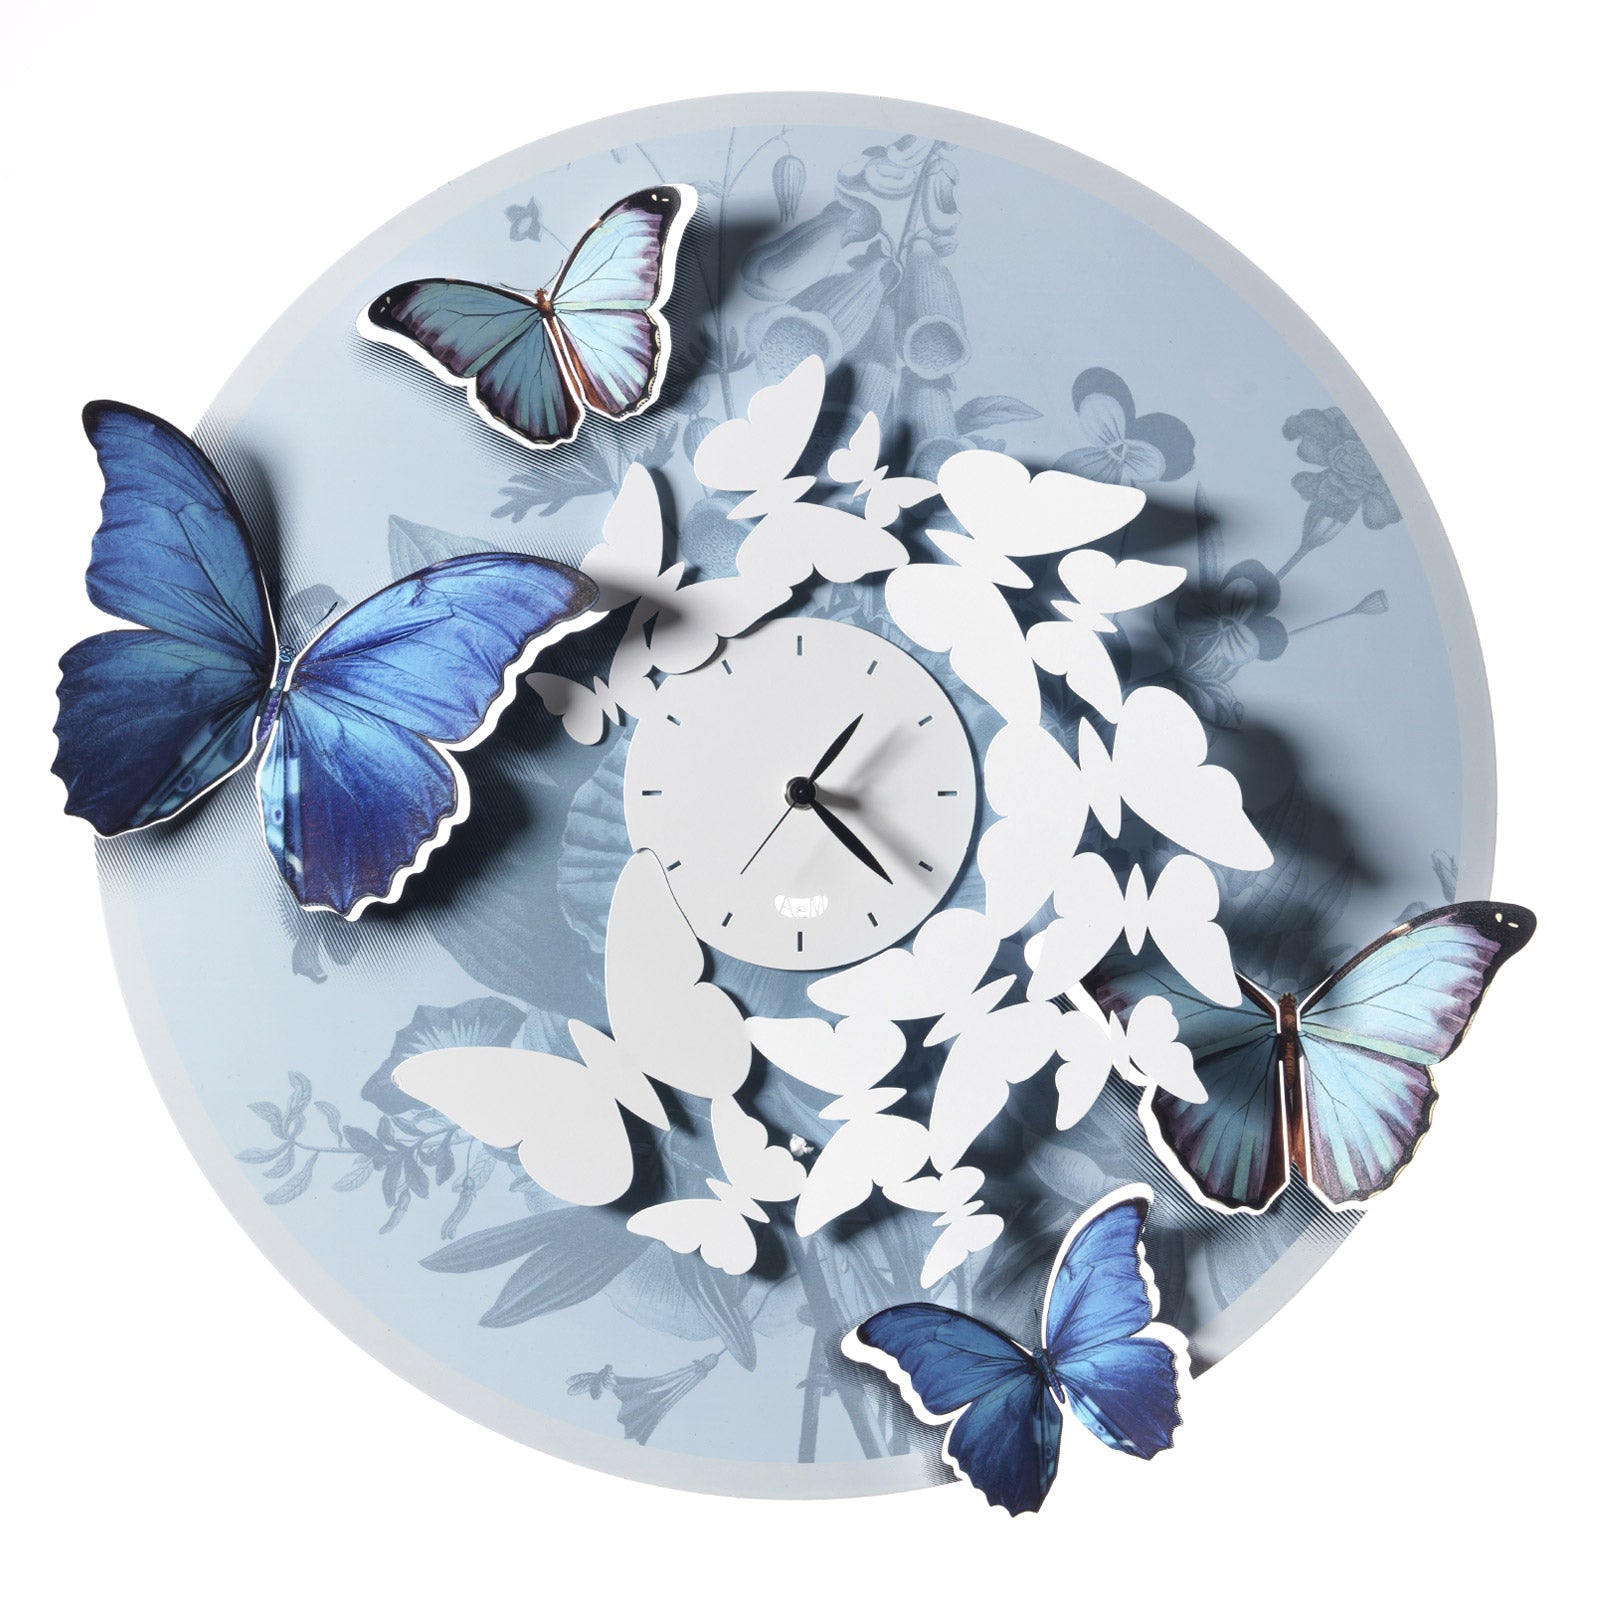 Arti & Mestieri Mariposa Orologio da parete con farfalle